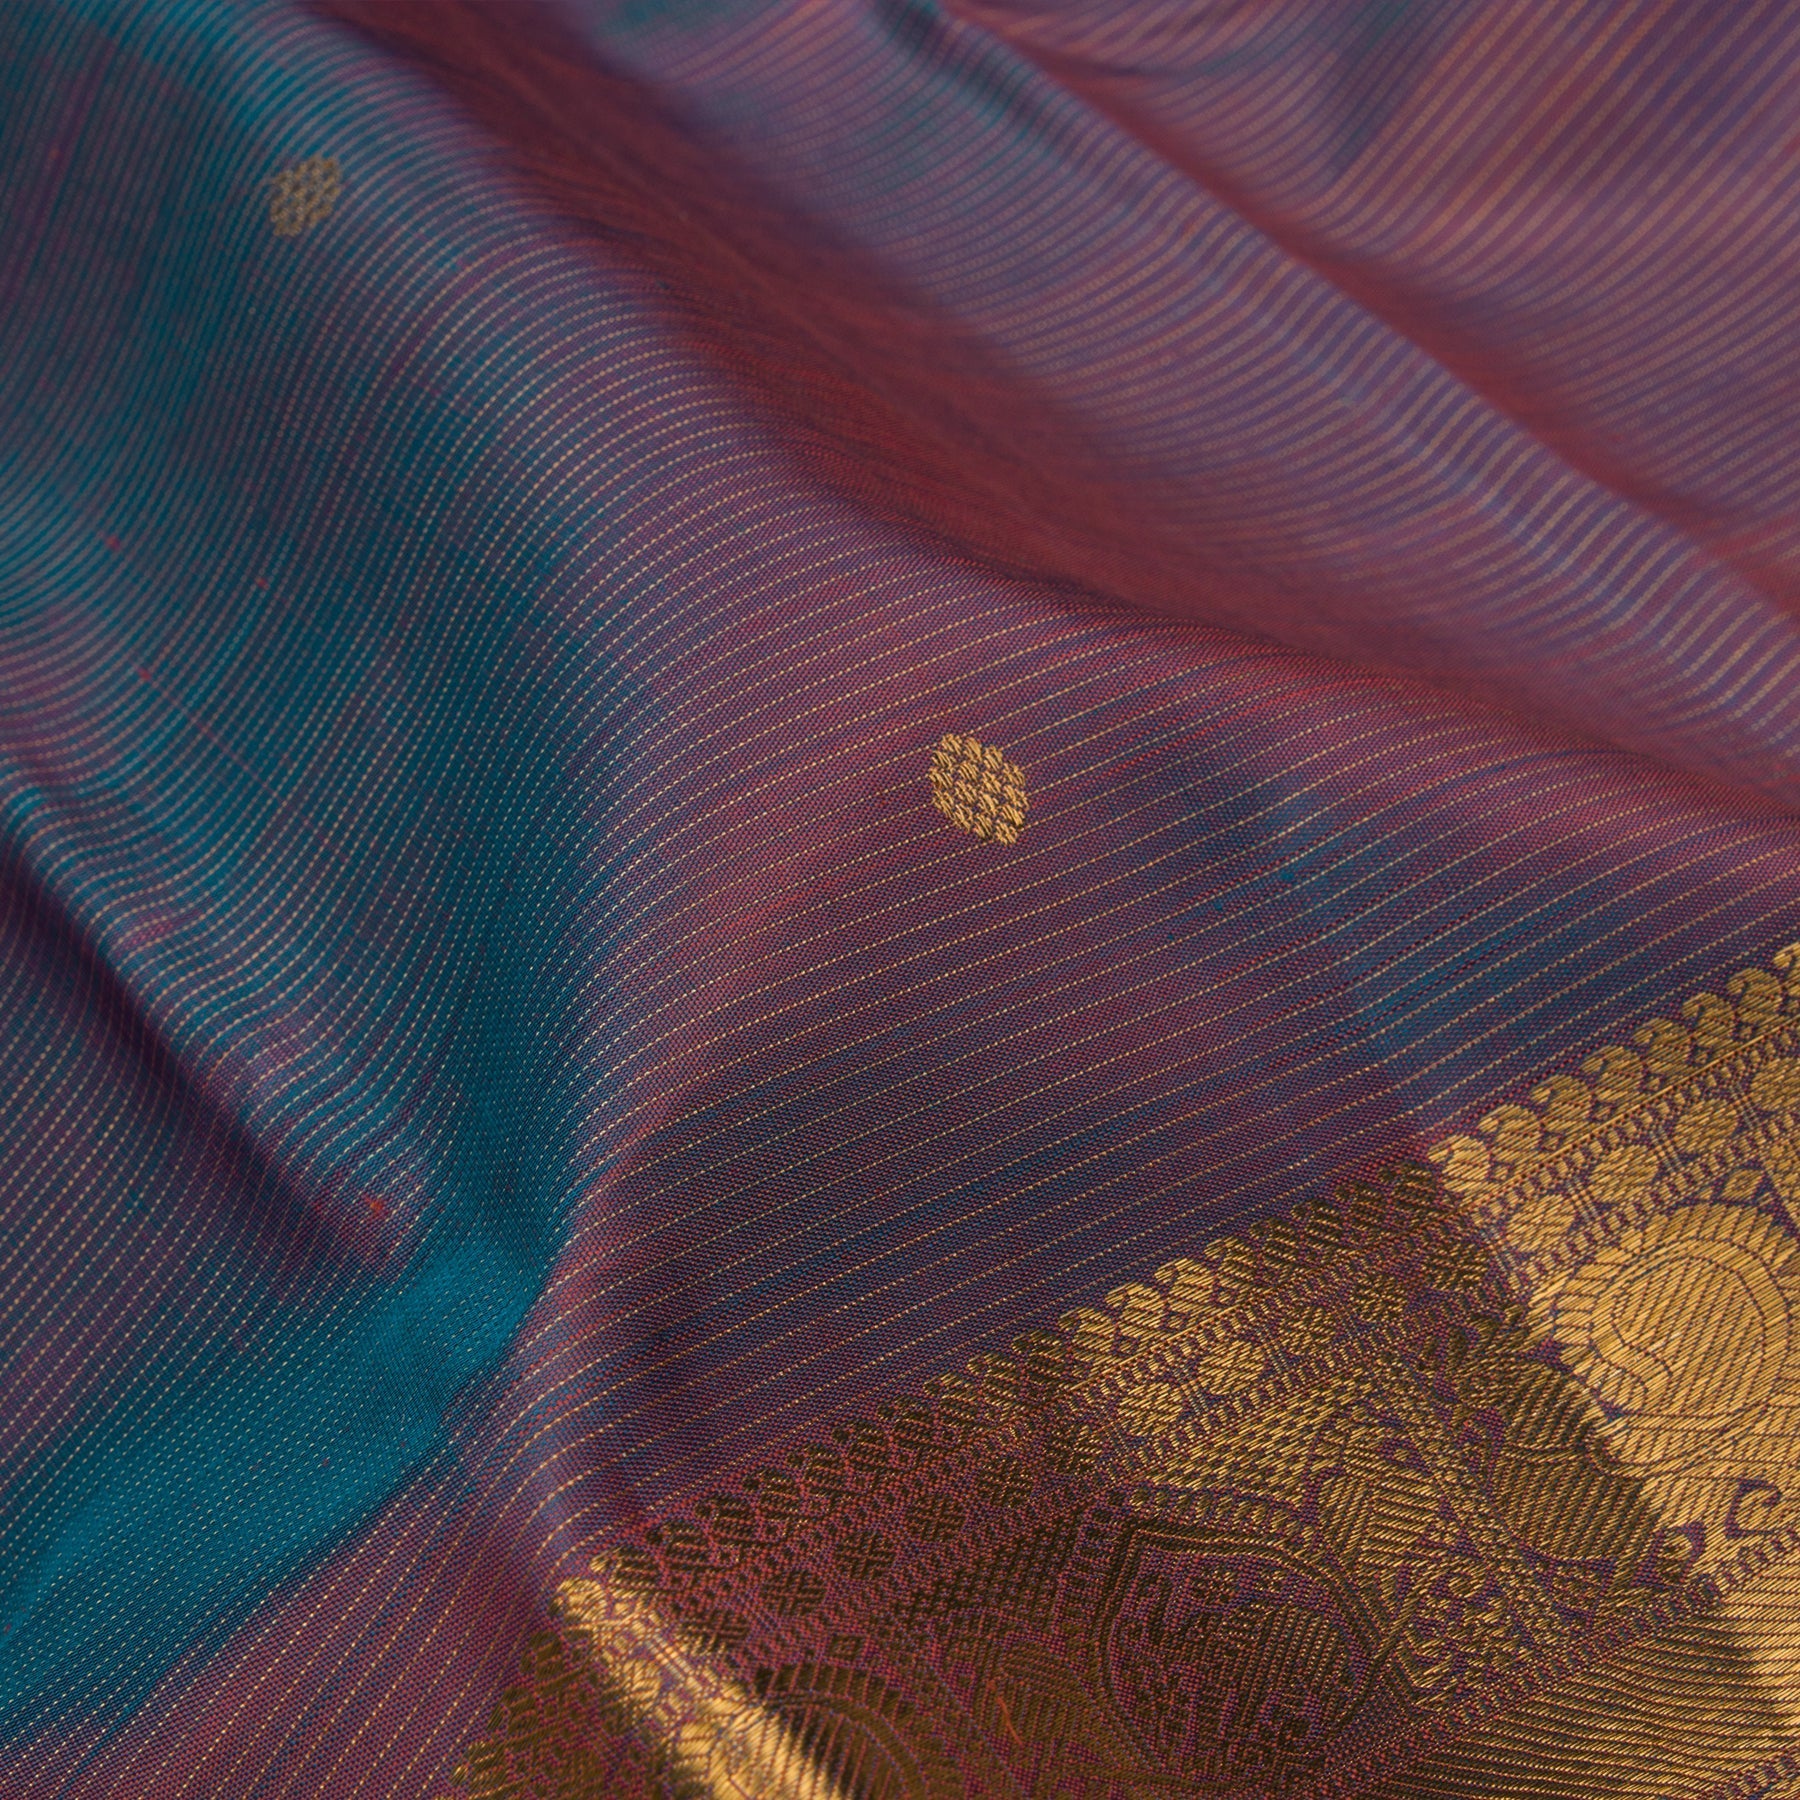 Kanakavalli Kanjivaram Silk Sari 22-599-HS001-13075 - Fabric View